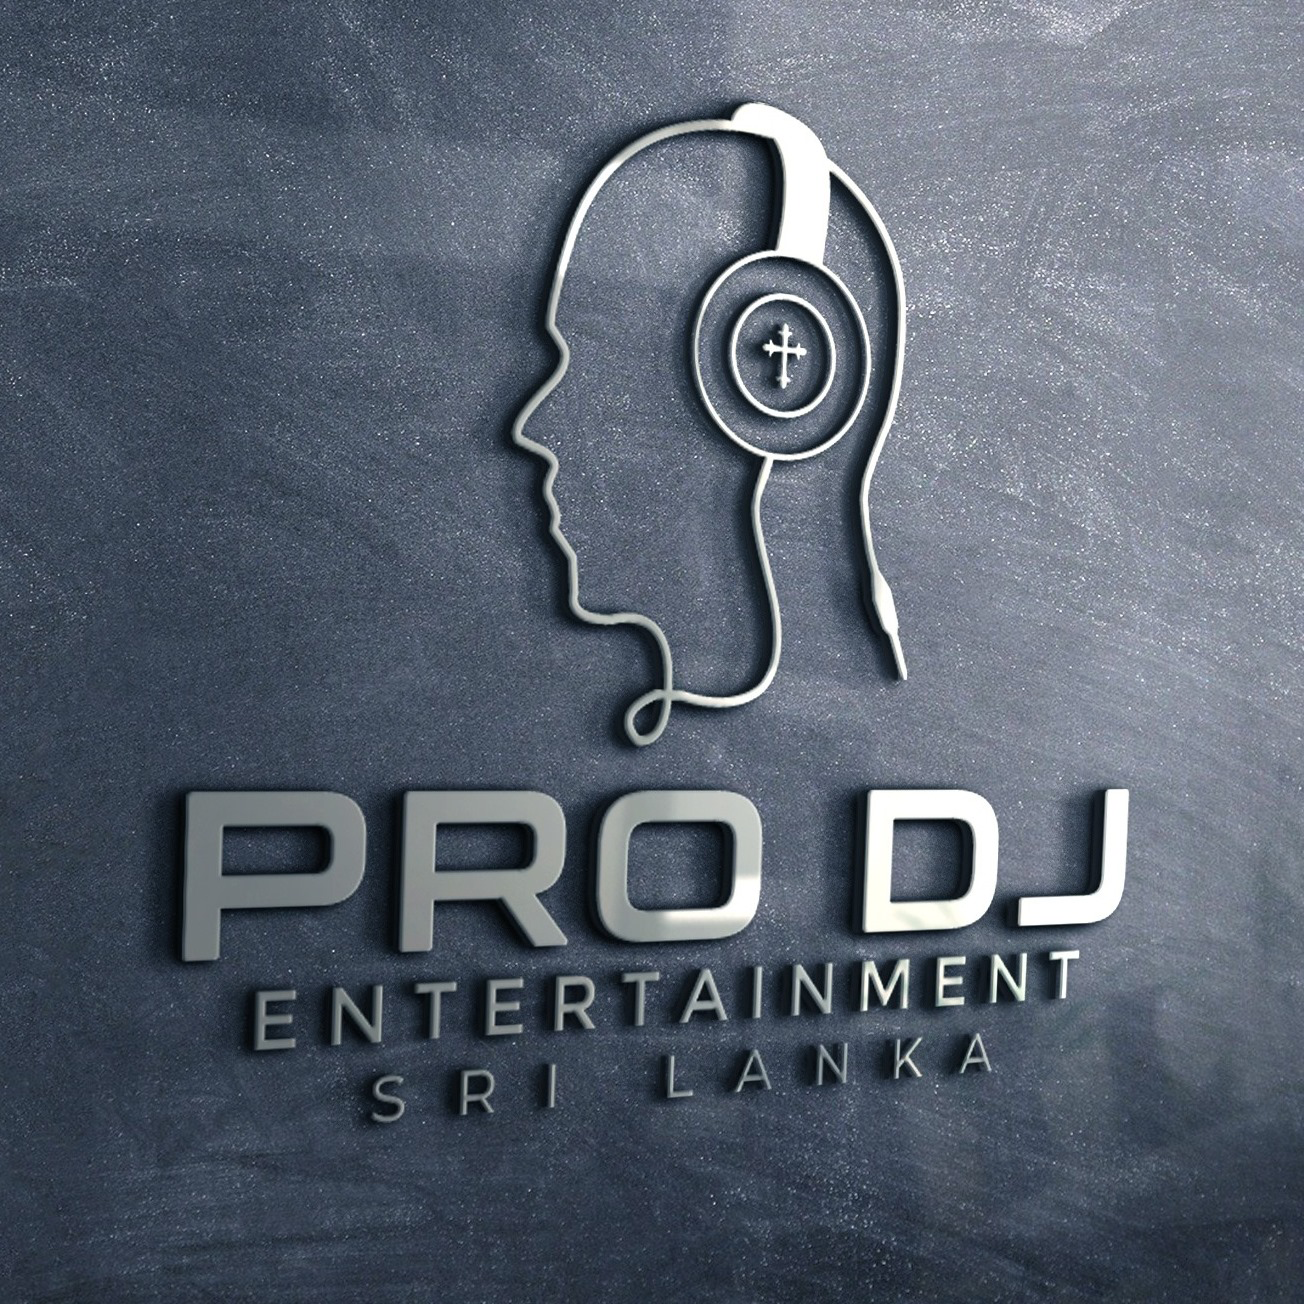 Pro DJ Entertainment Sri Lanka